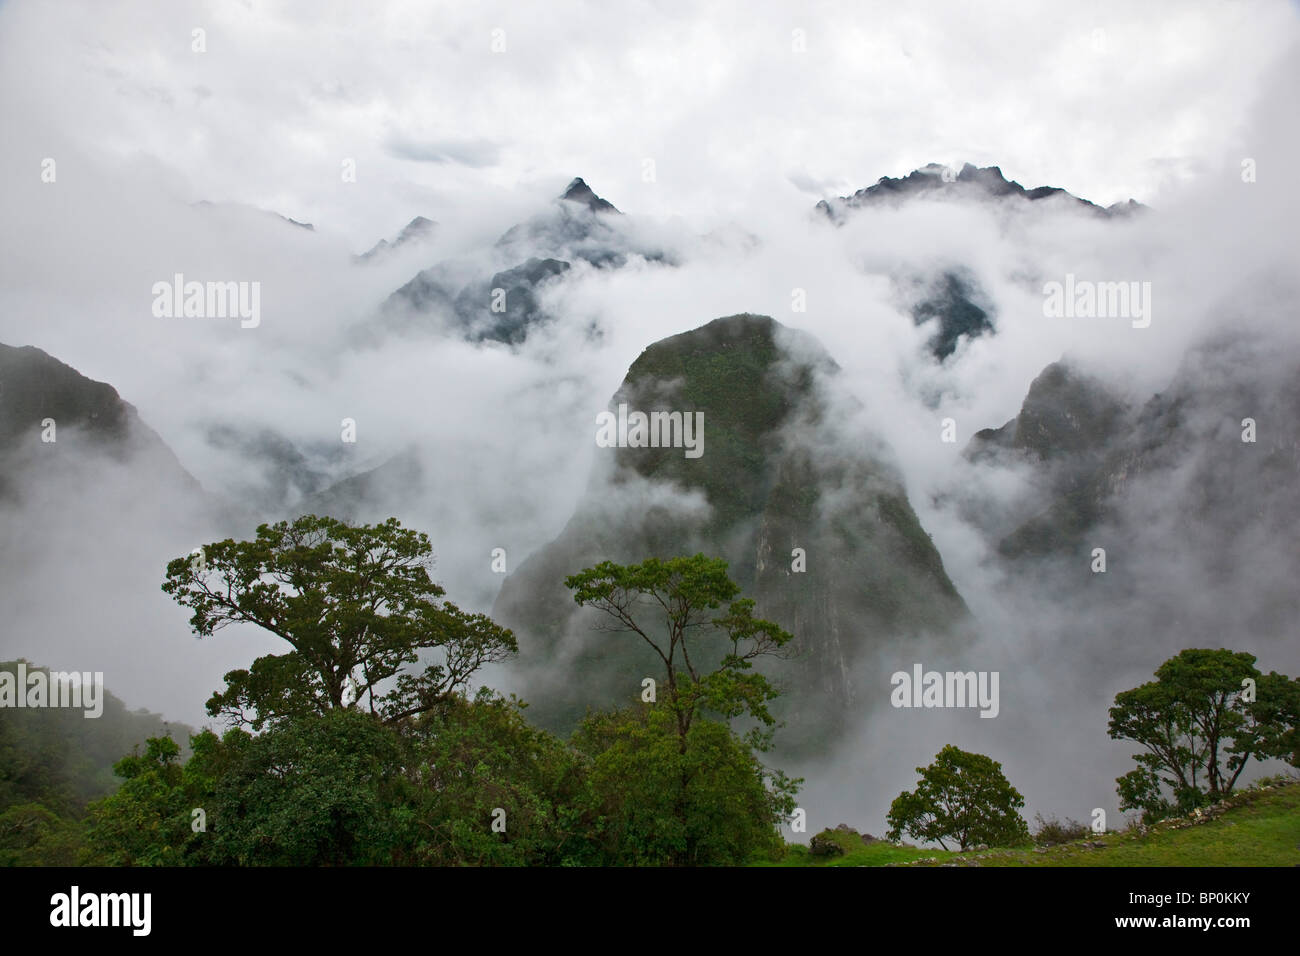 Peru, In den frühen Morgenstunden geringer Nebel und Wolken steigen aus den steilen Tälern rund um die Inka-Ruinen in Machu Picchu. Stockfoto